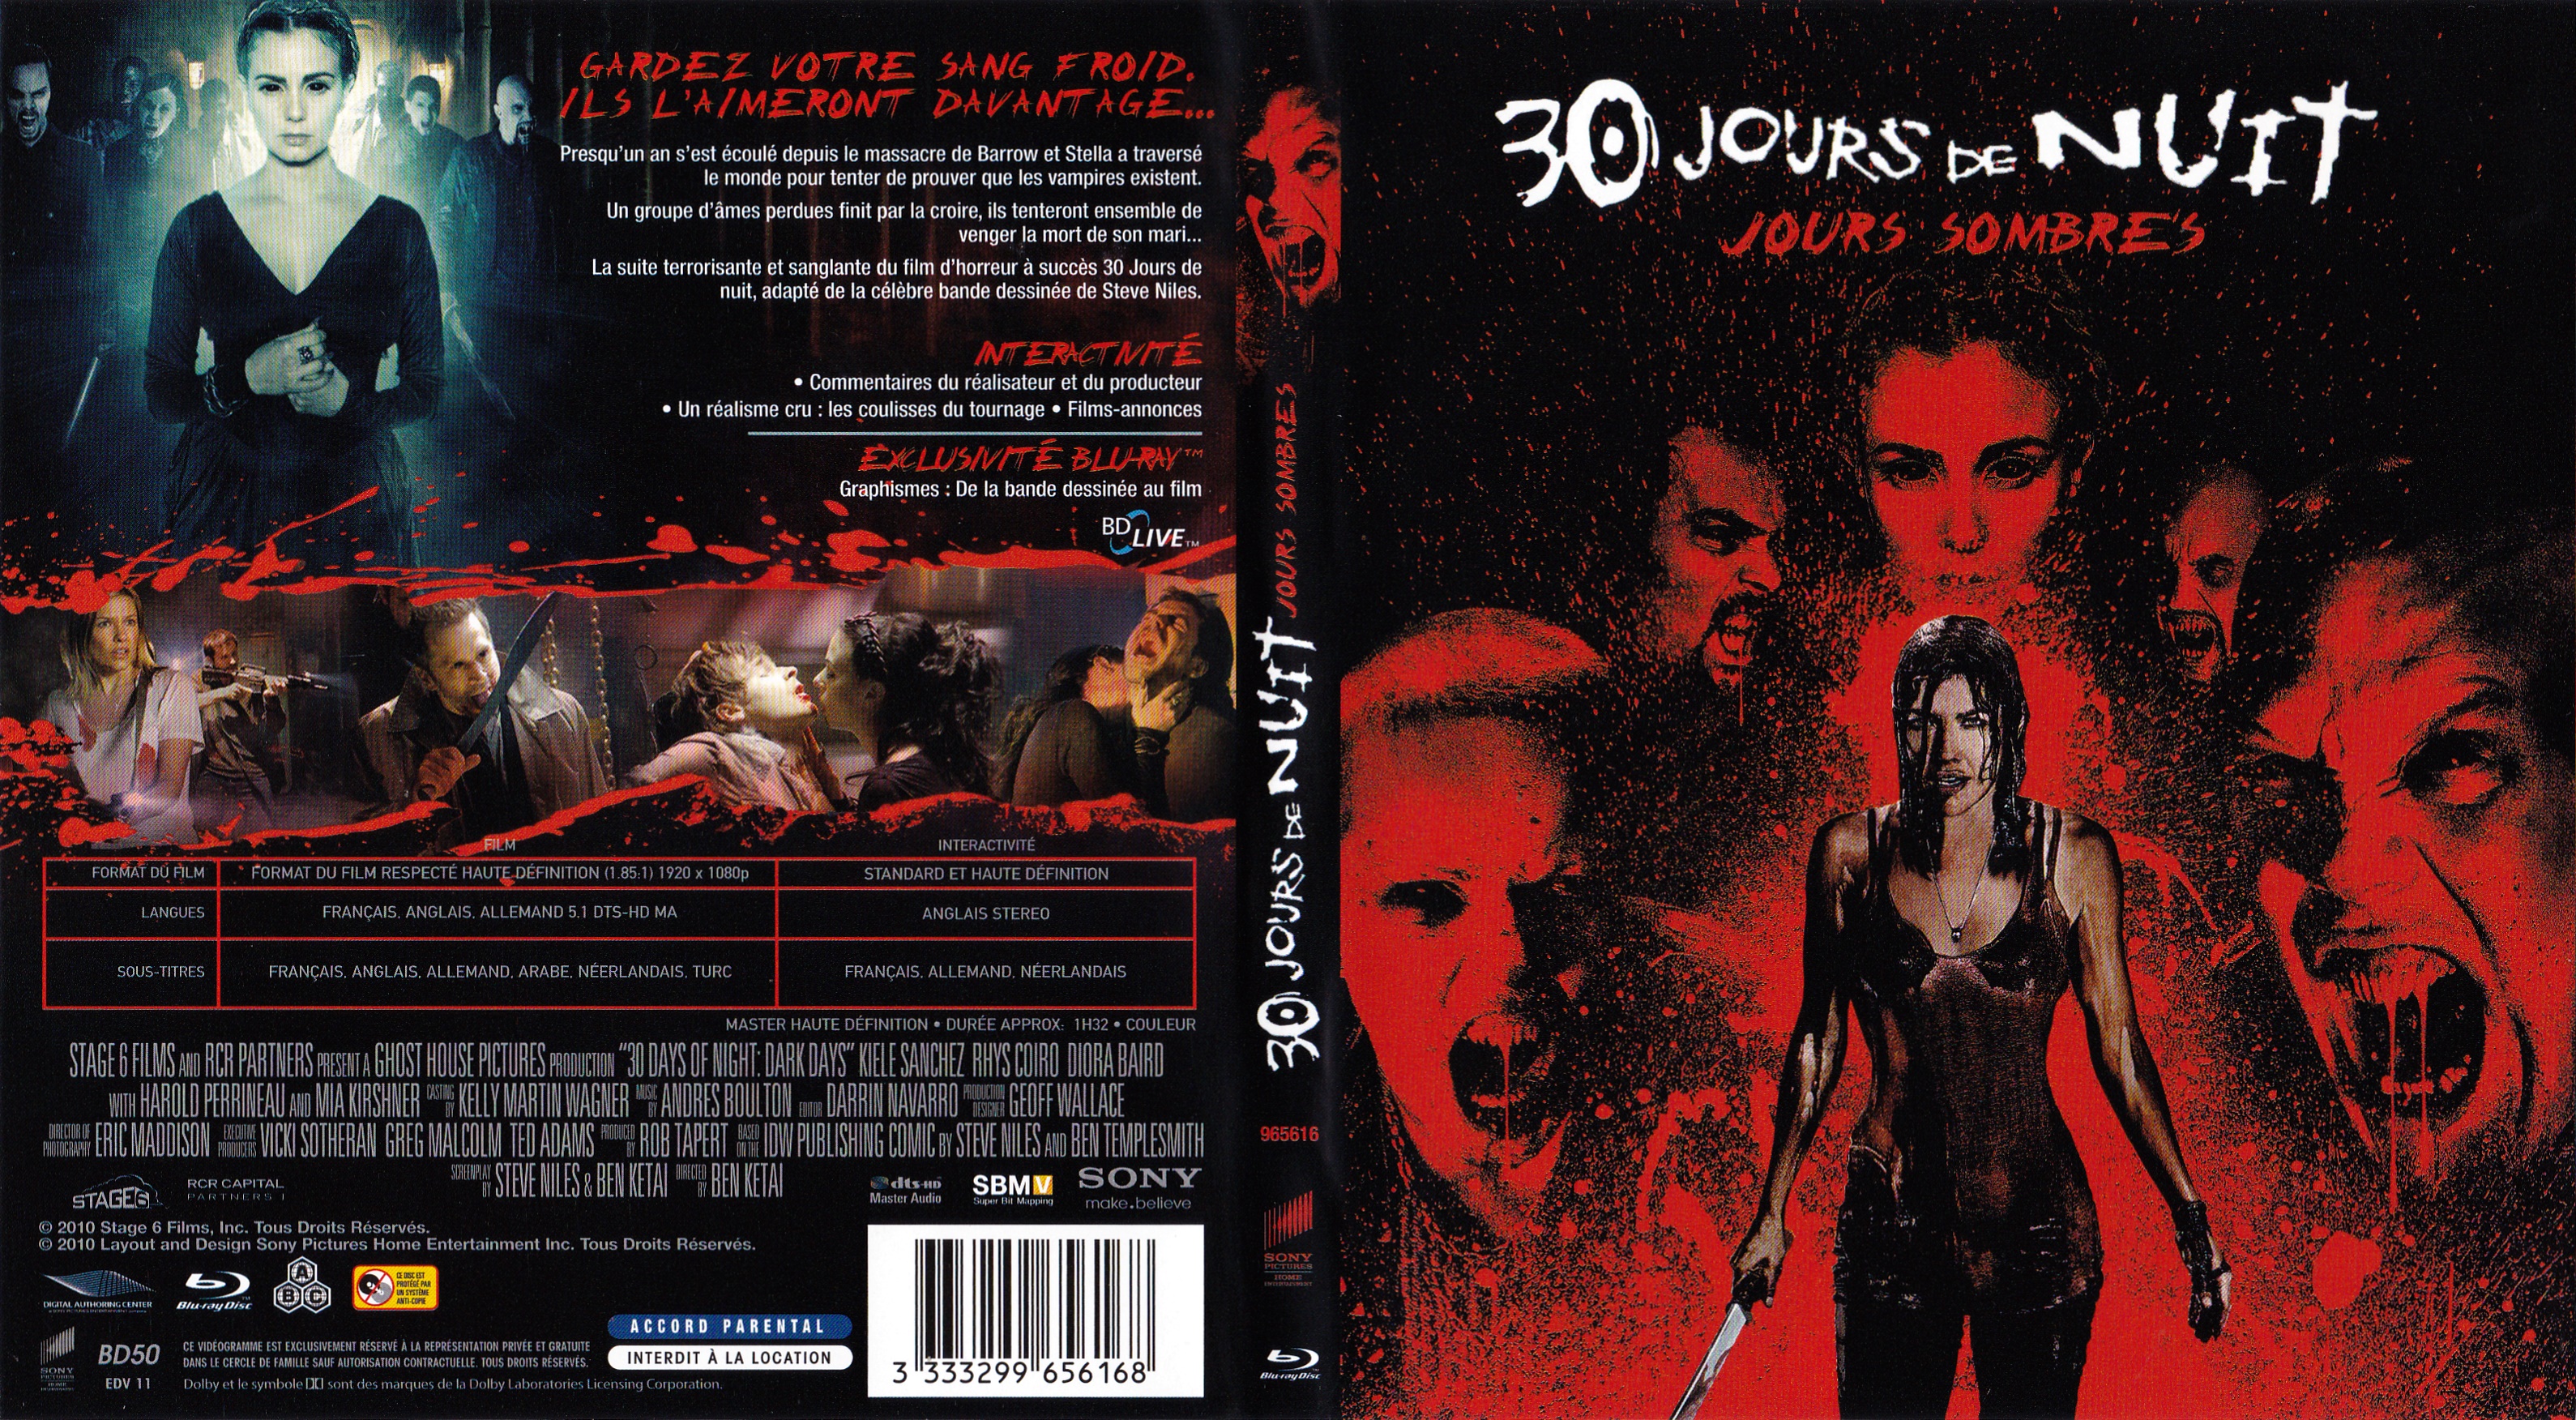 Jaquette DVD 30 jours de nuits - jours sombres (BLU-RAY)